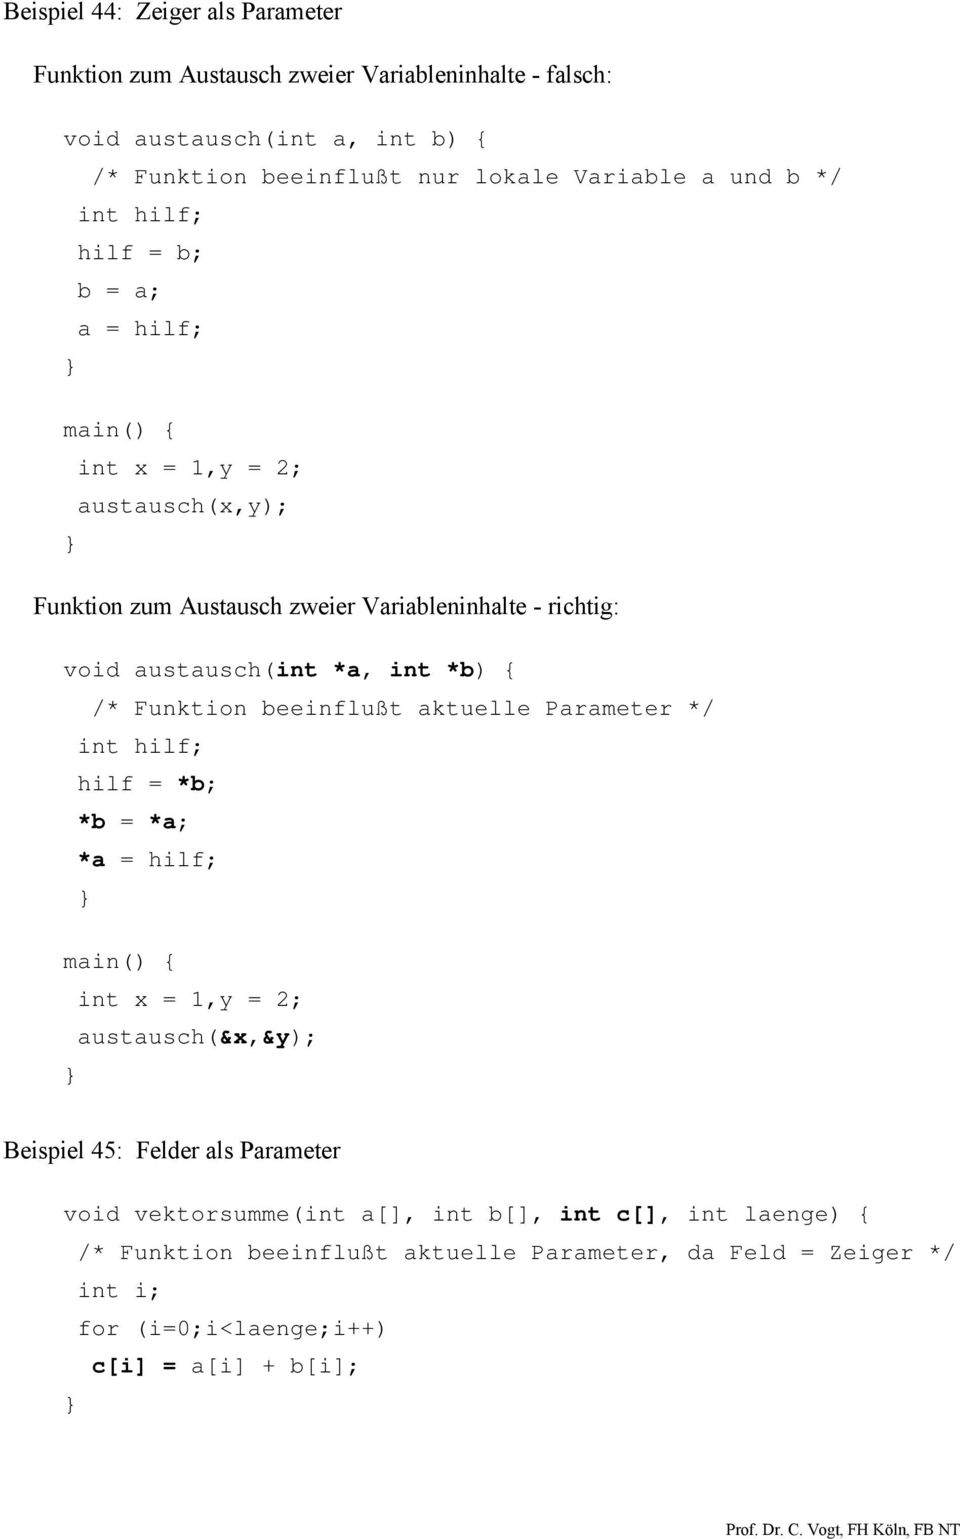 *b) { /* Funktion beeinflußt aktuelle Parameter */ int hilf; hilf = *b; *b = *a; *a = hilf; int x = 1,y = 2; austausch(&x,&y); Beispiel 45: Felder als Parameter void